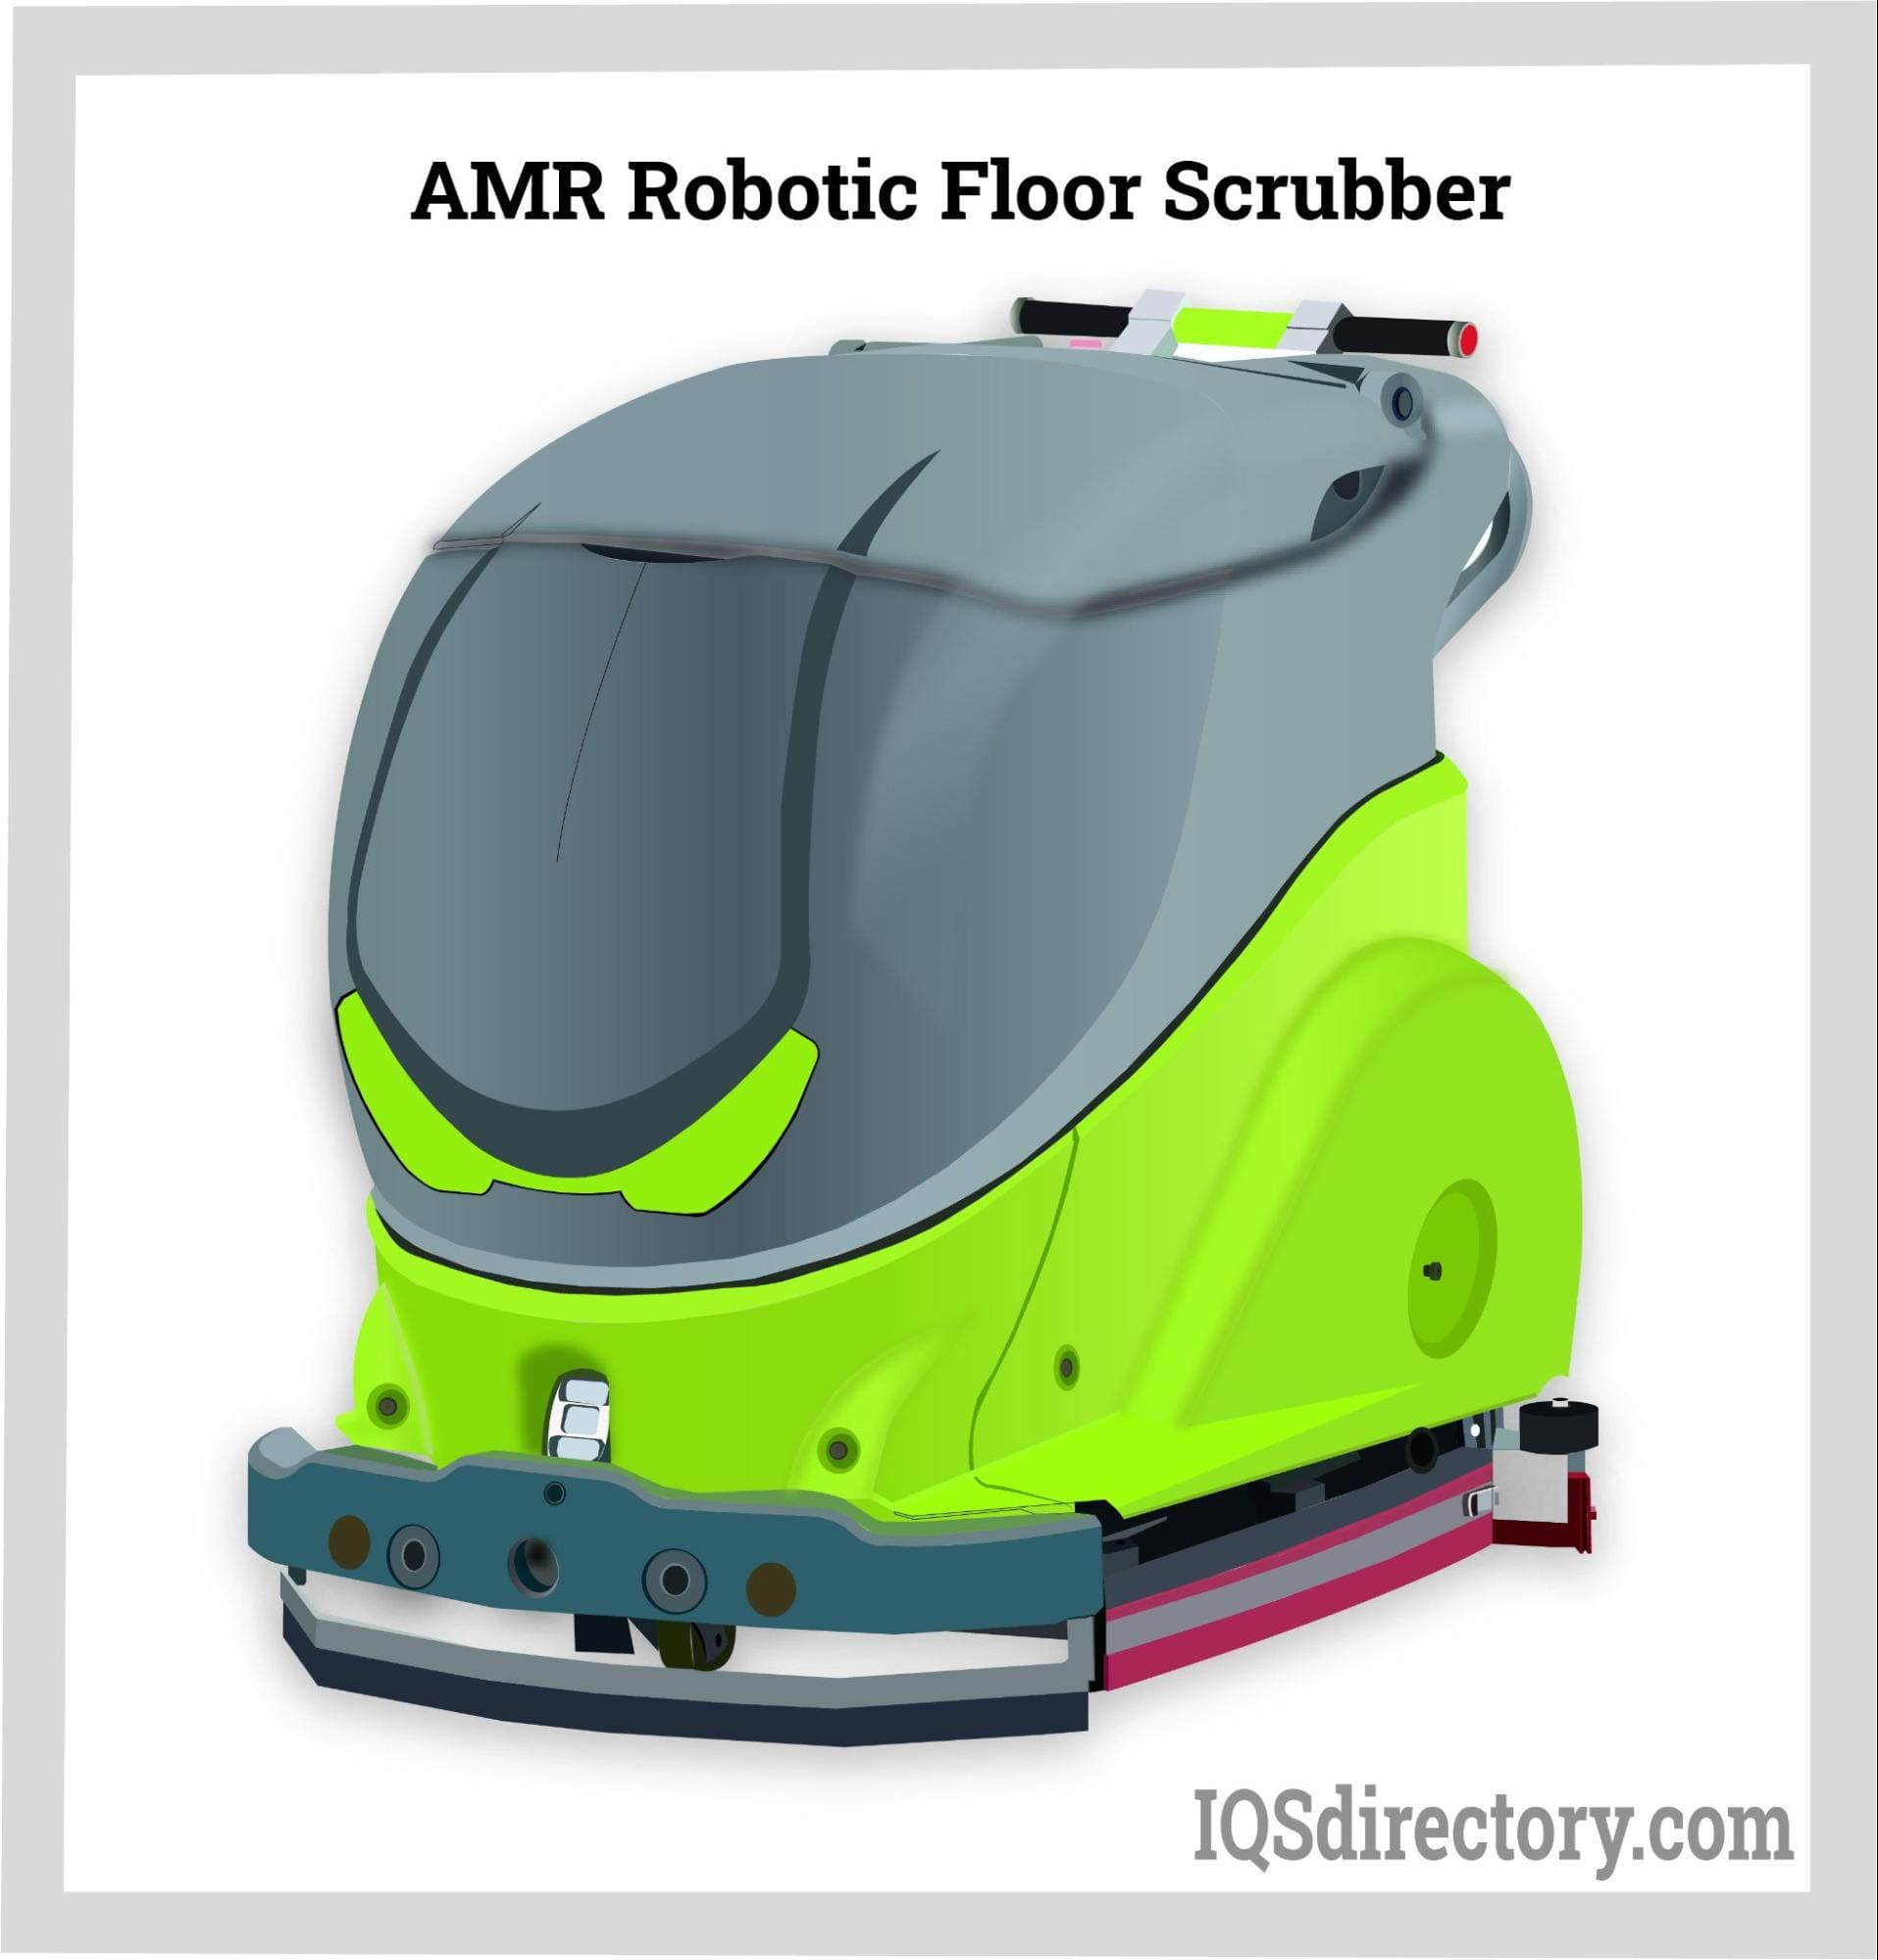 AMR Robotic Floor Scrubber